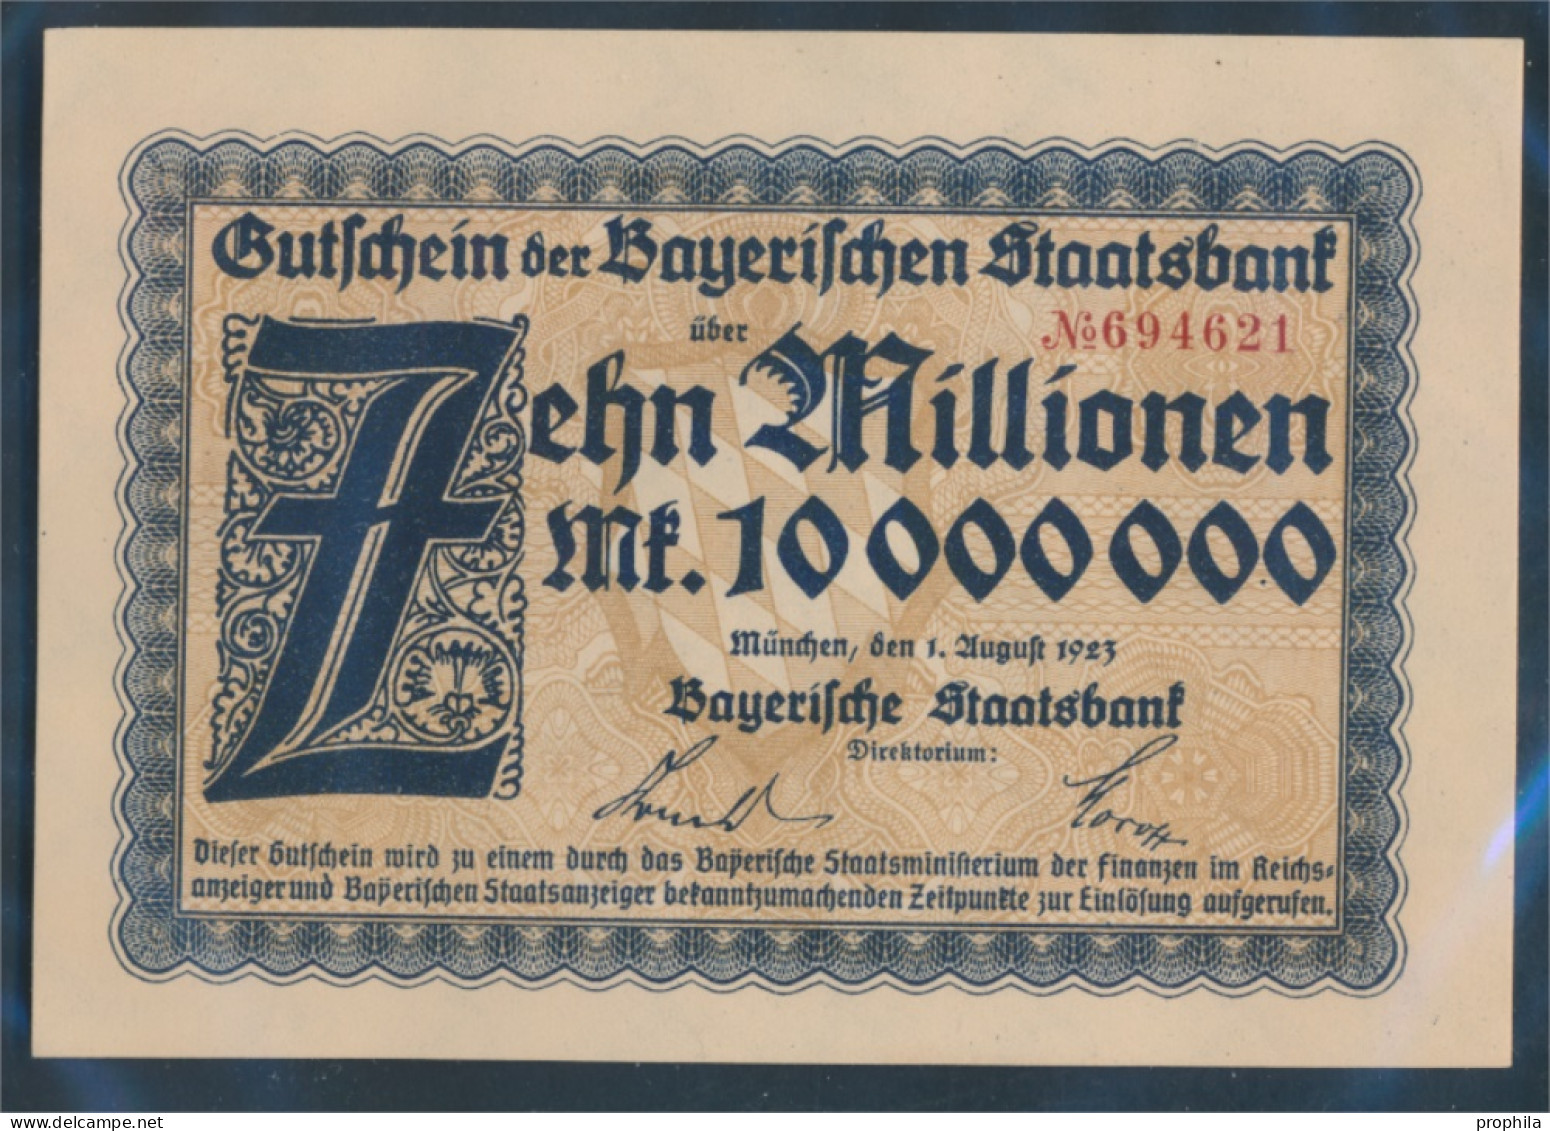 Bayern Inflationsgeld Bayerische Staatsbank Bankfrisch 1923 10 Millionen Mark (10288396 - 10 Miljoen Mark